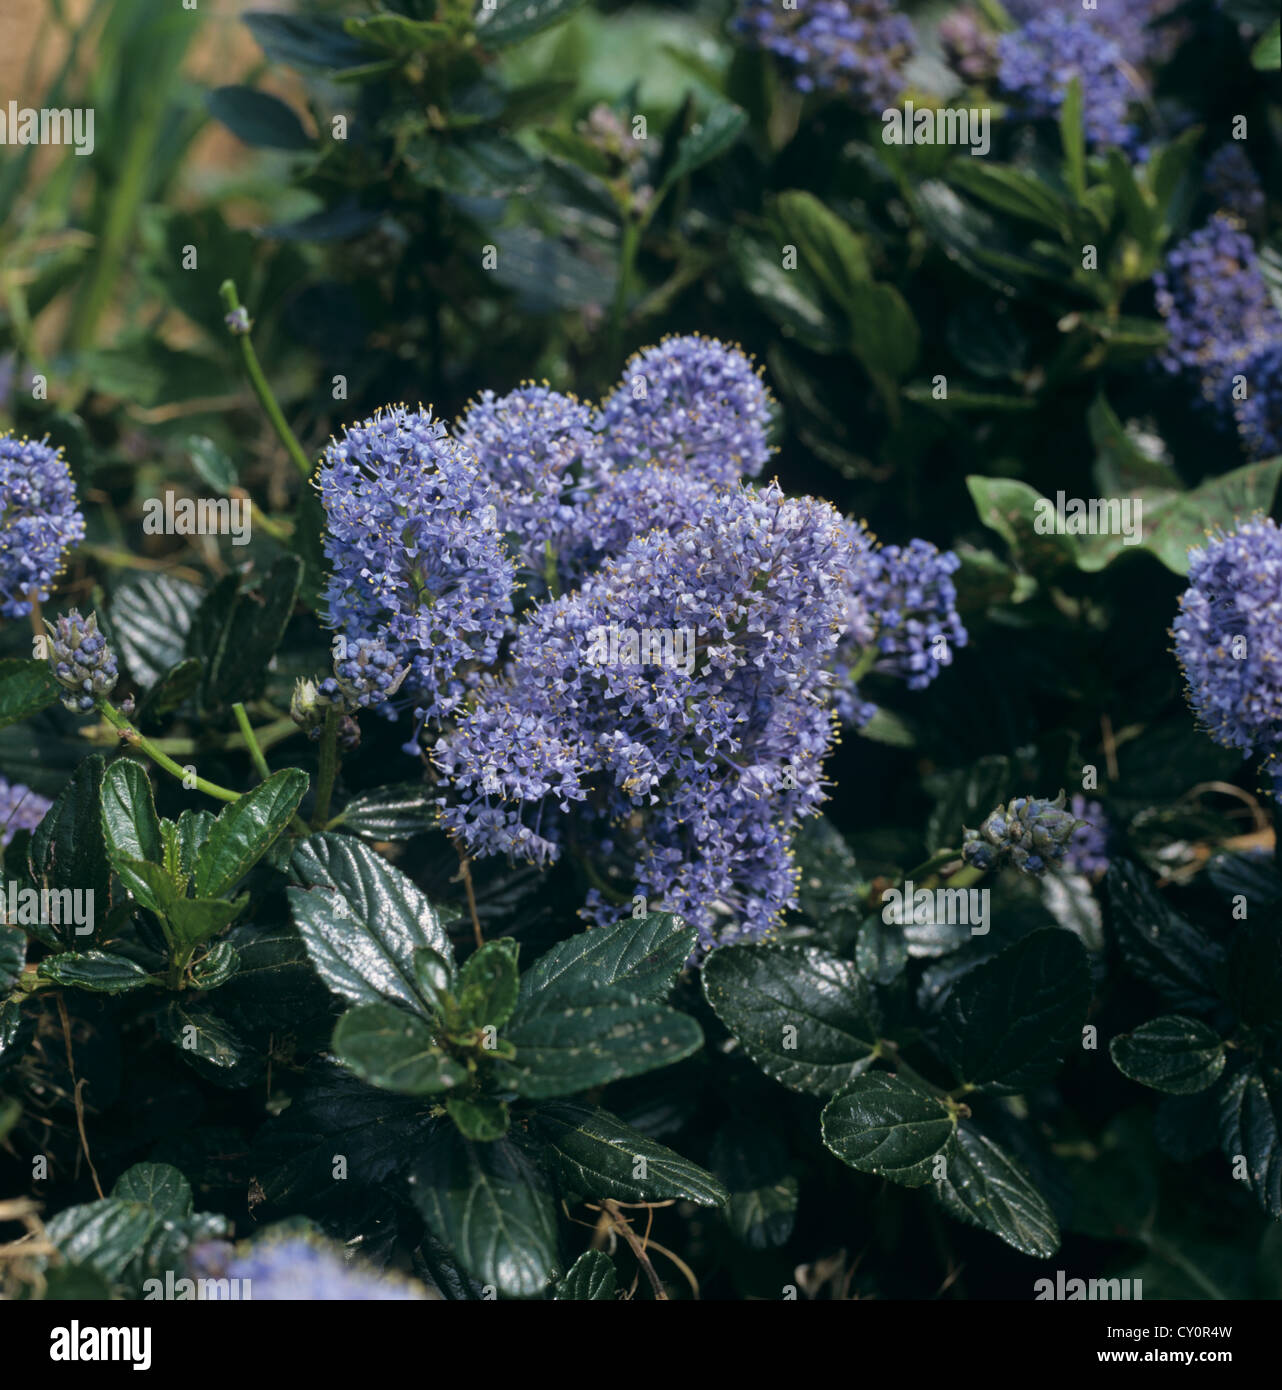 Fleurs bleues d'un arbuste ornemental déprimés var repens Ceanothus thyrisiflorus Banque D'Images